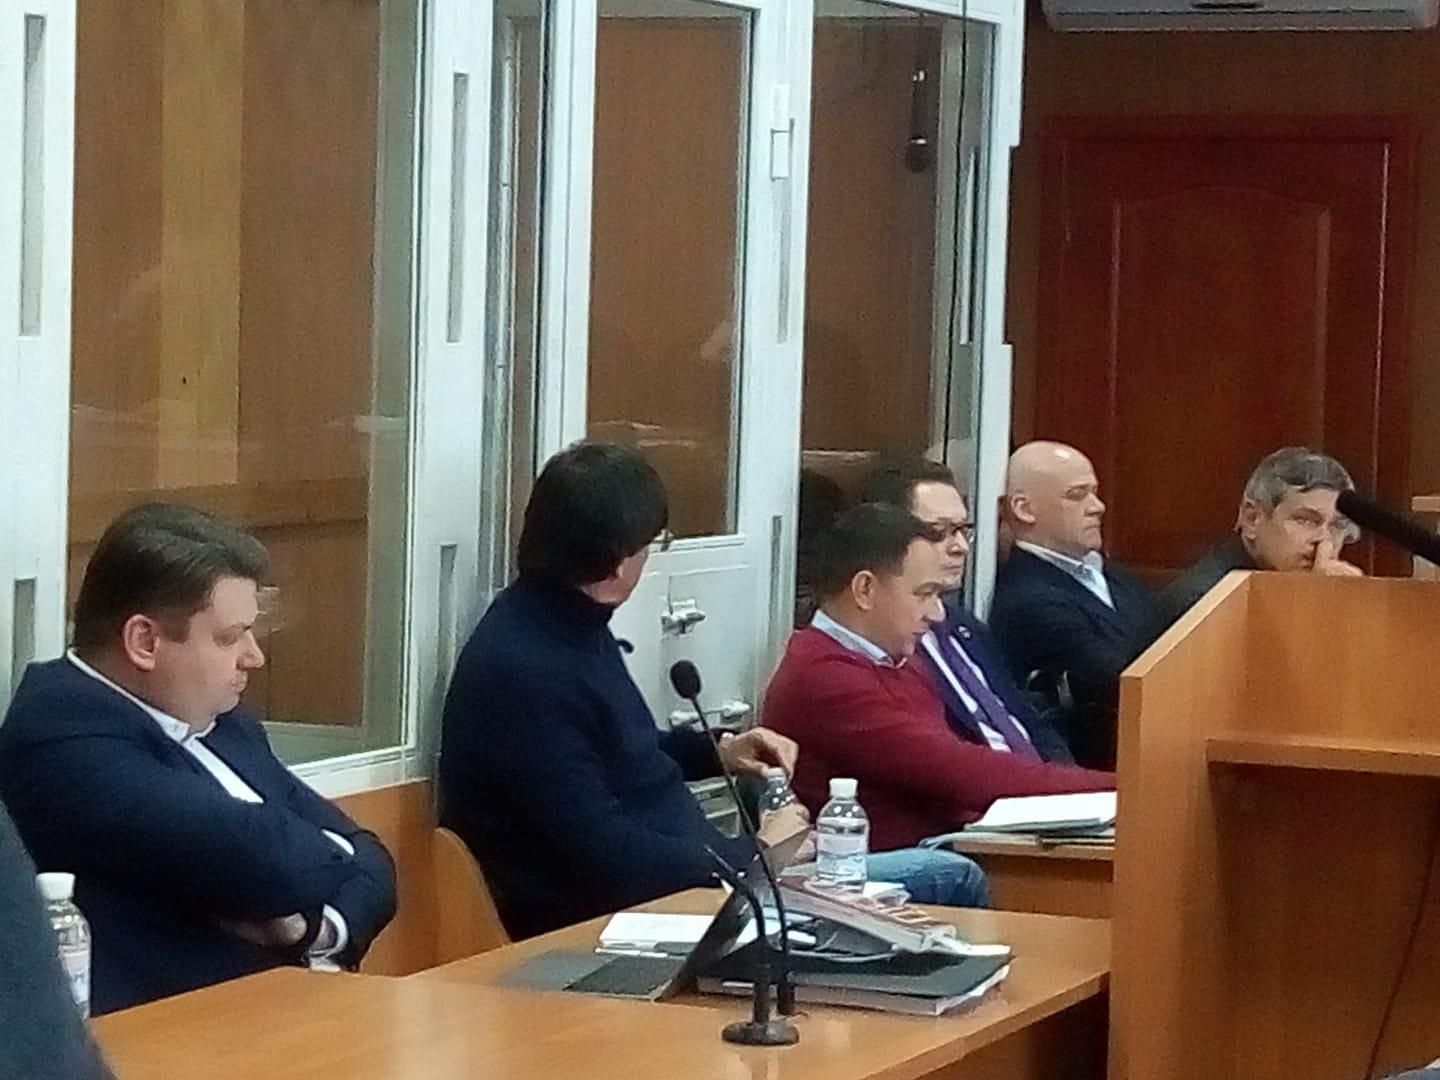 "Хочемо побажати, щоб Труханов сів за ґрати": активісти заколядували на суді у справі мера Одеси